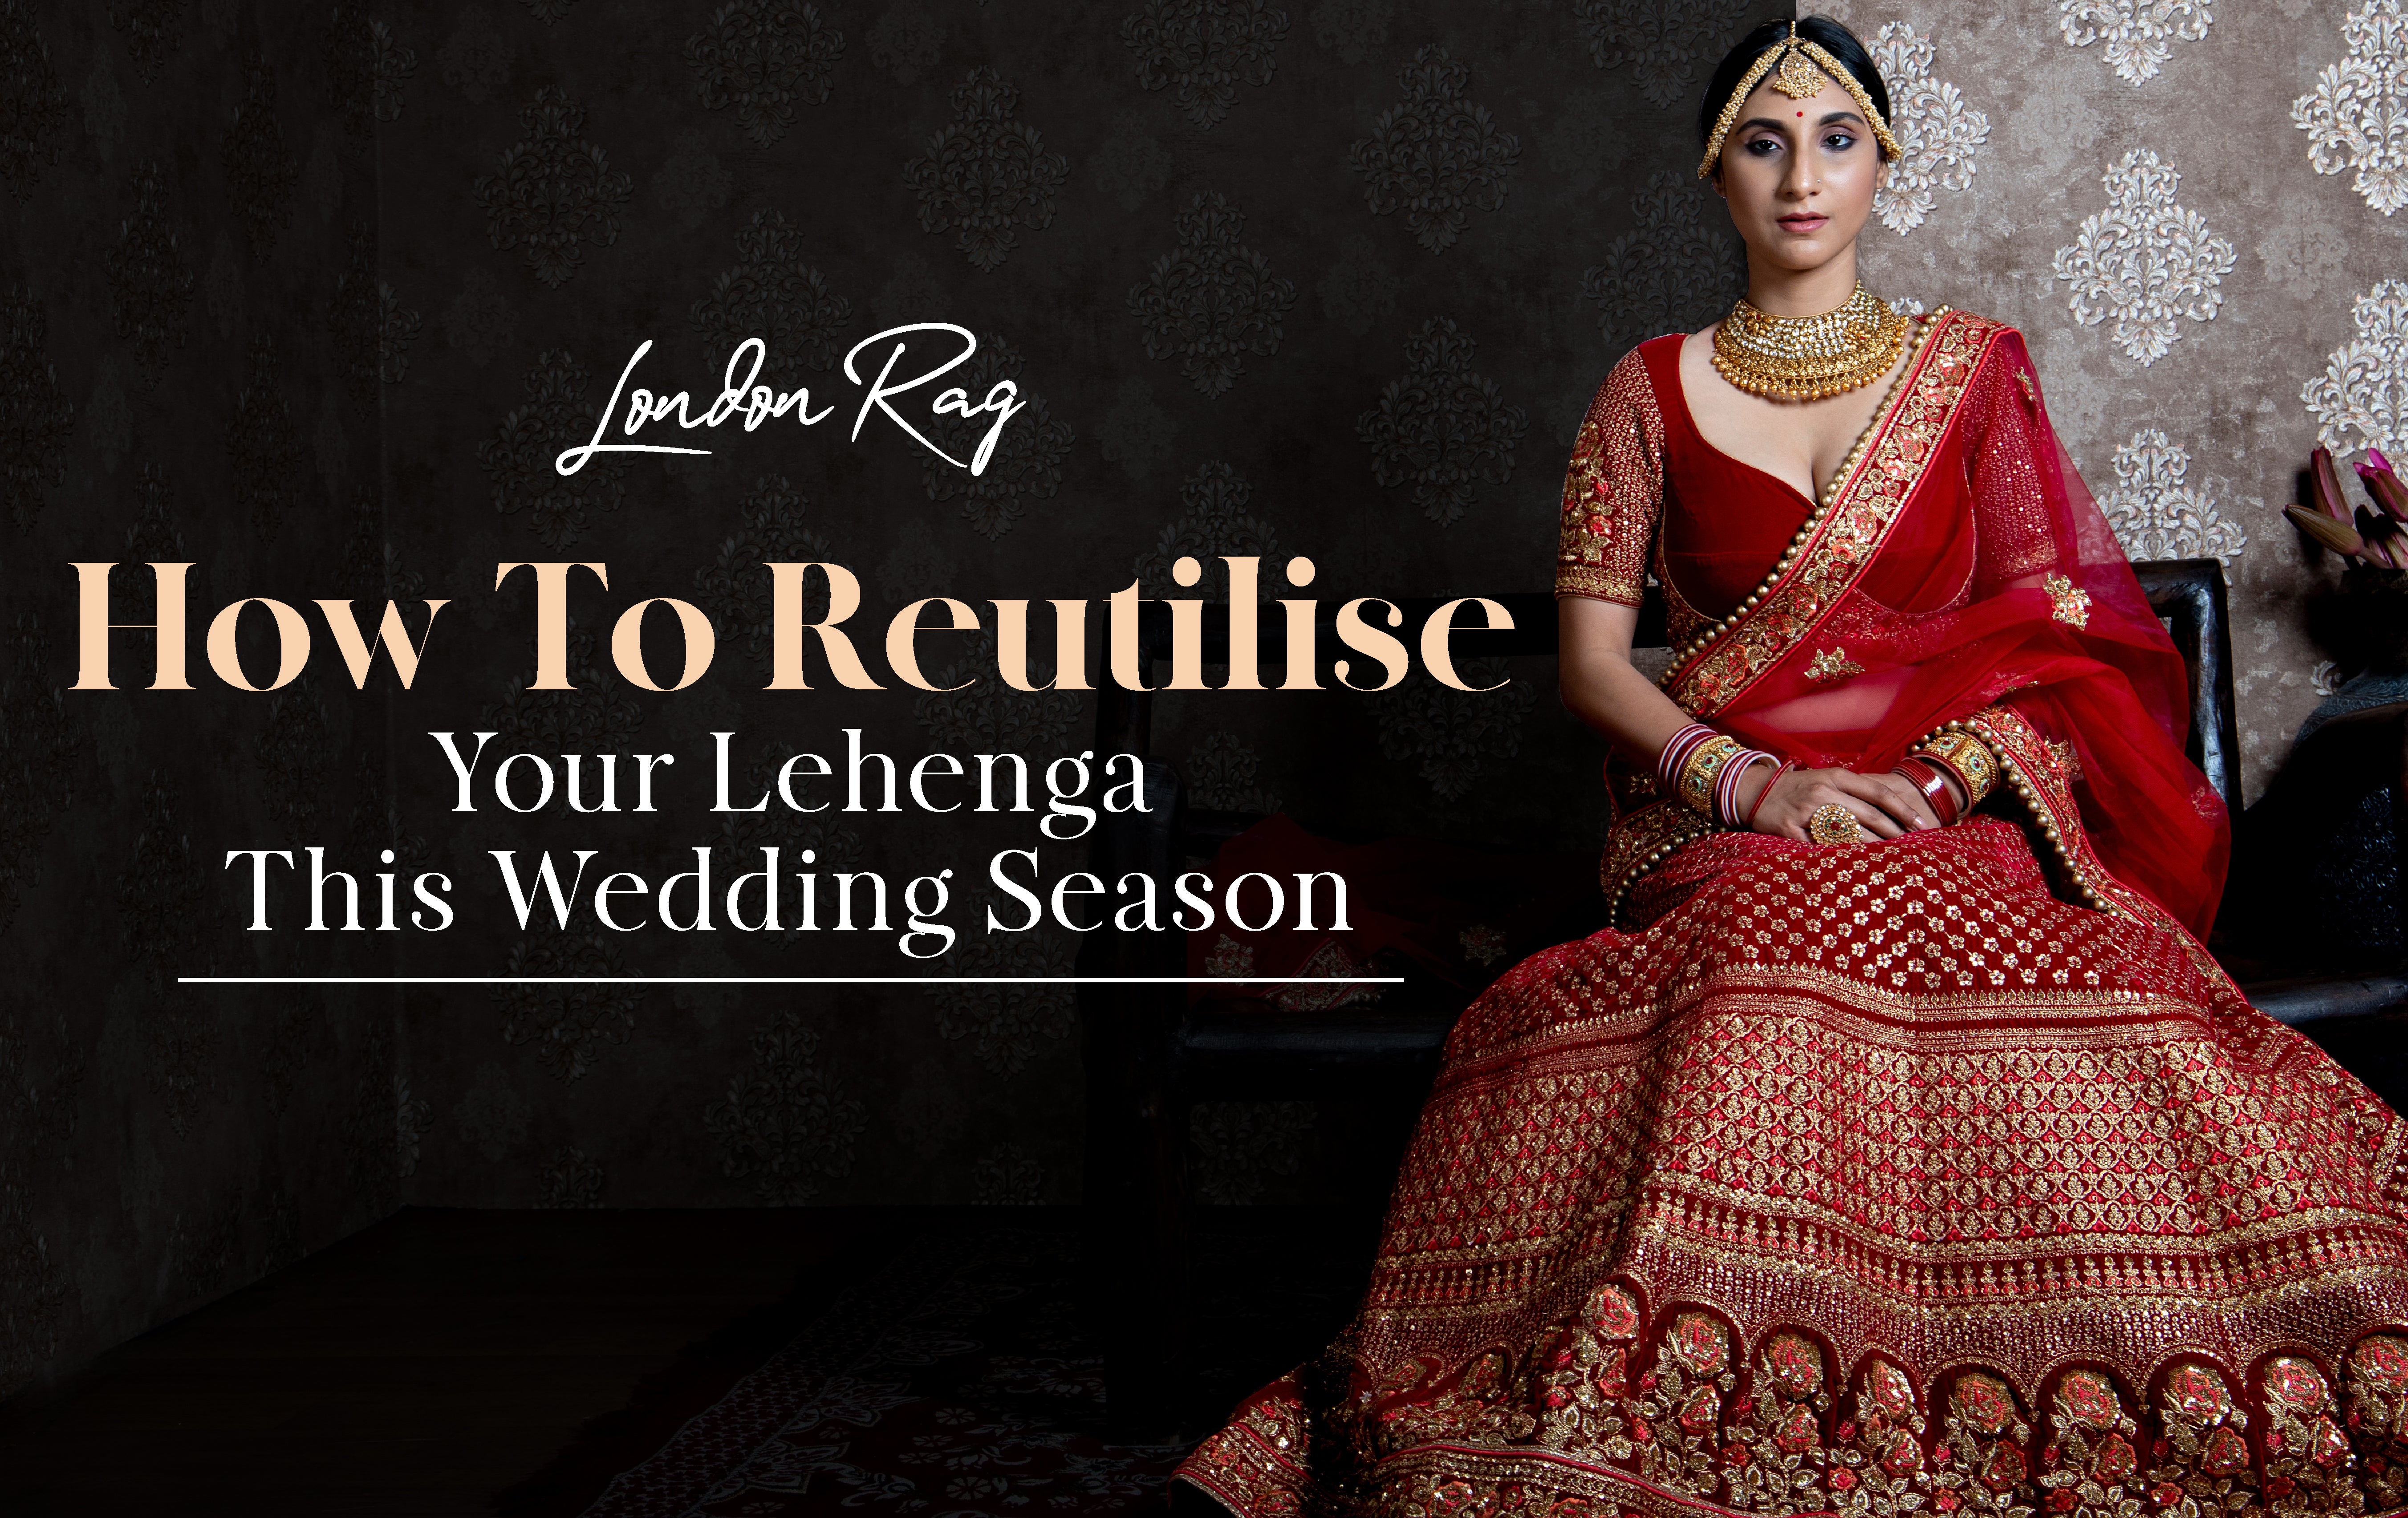 How To Reutilise Your Lehenga This Wedding Season